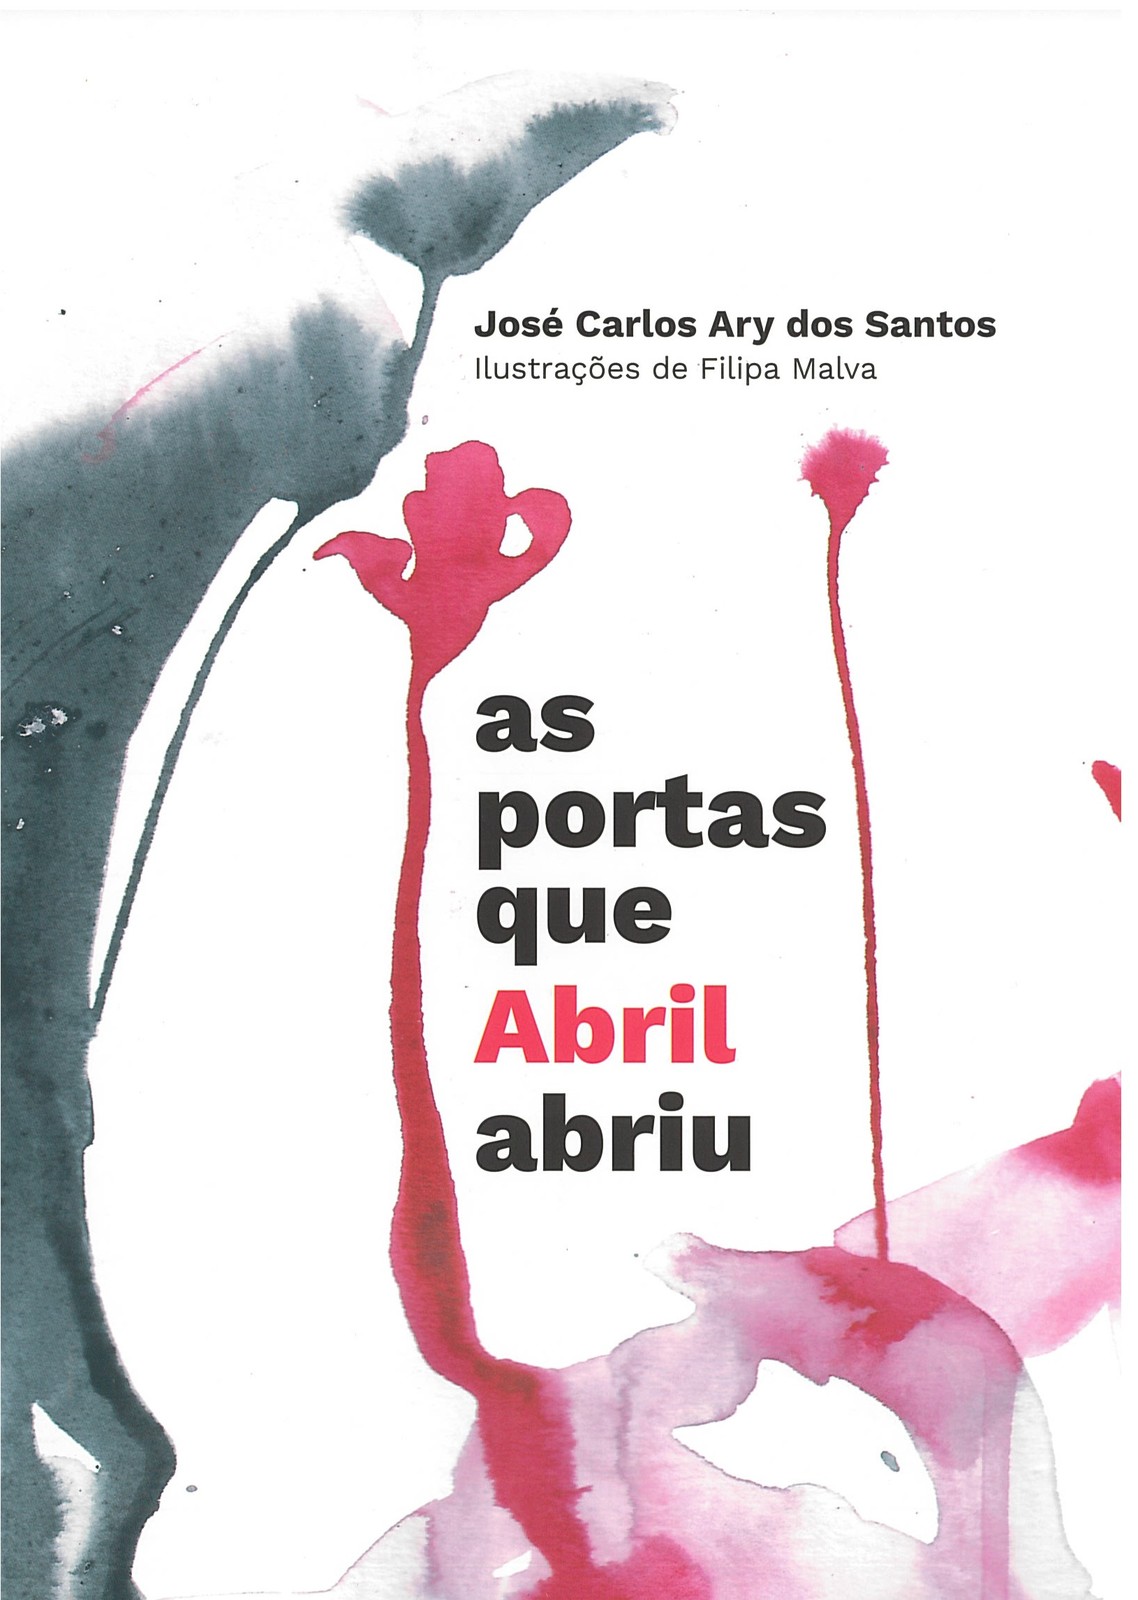 José Carlos Ary dos Santos - As portas que Abril abriu